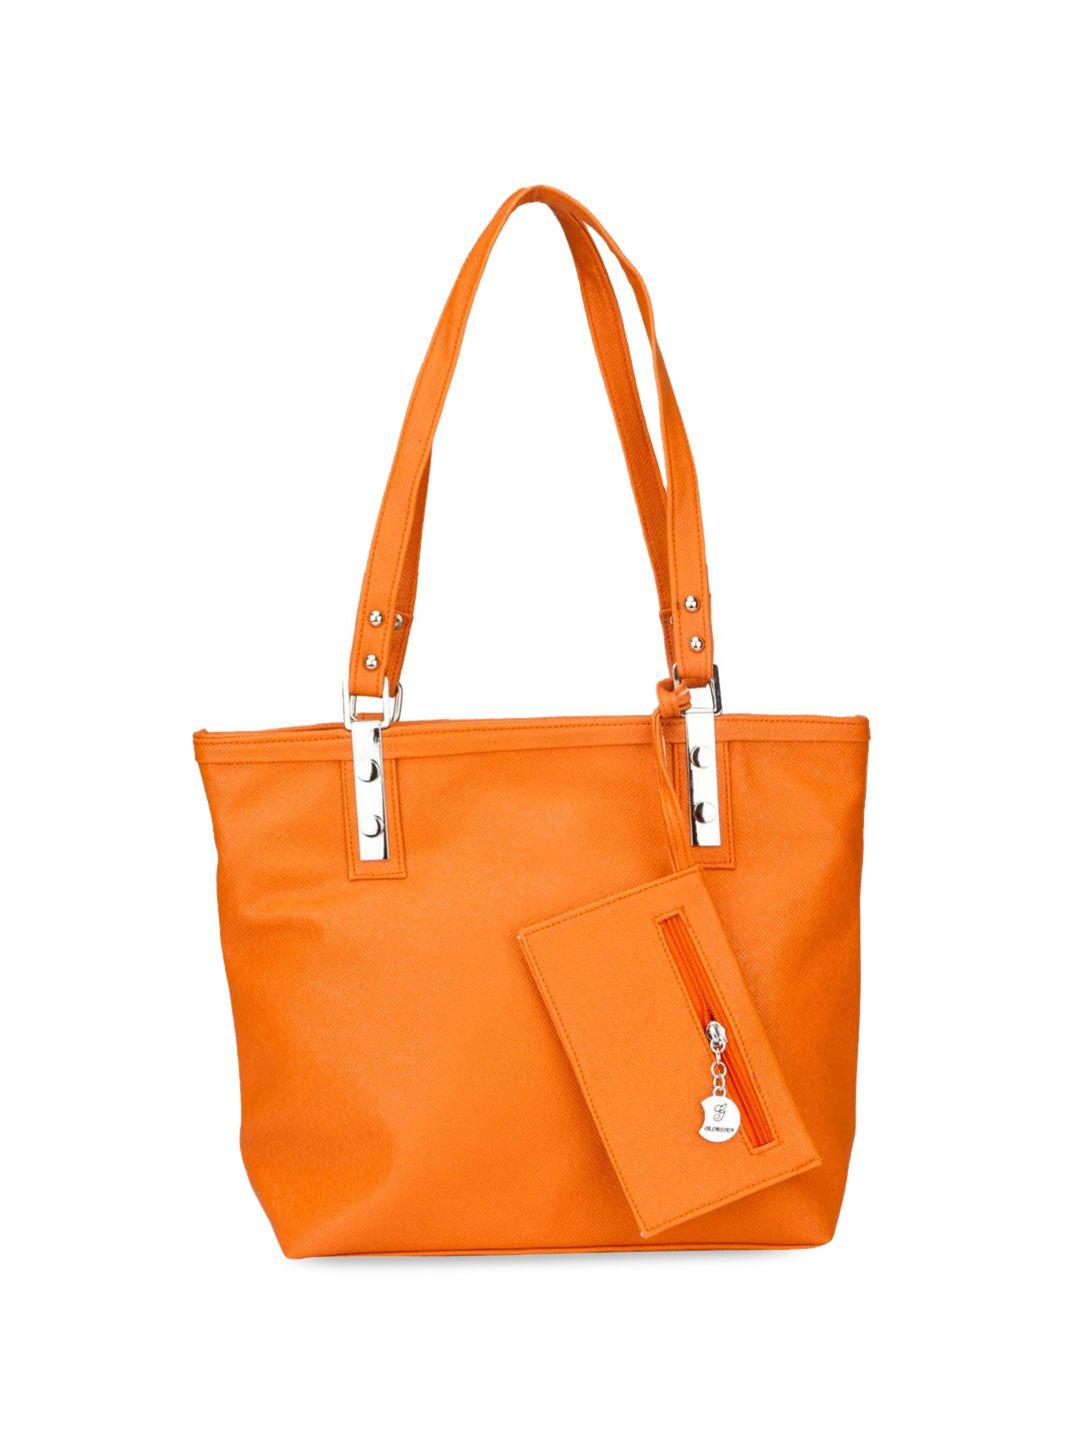 mast & harbour orange structured shoulder bag